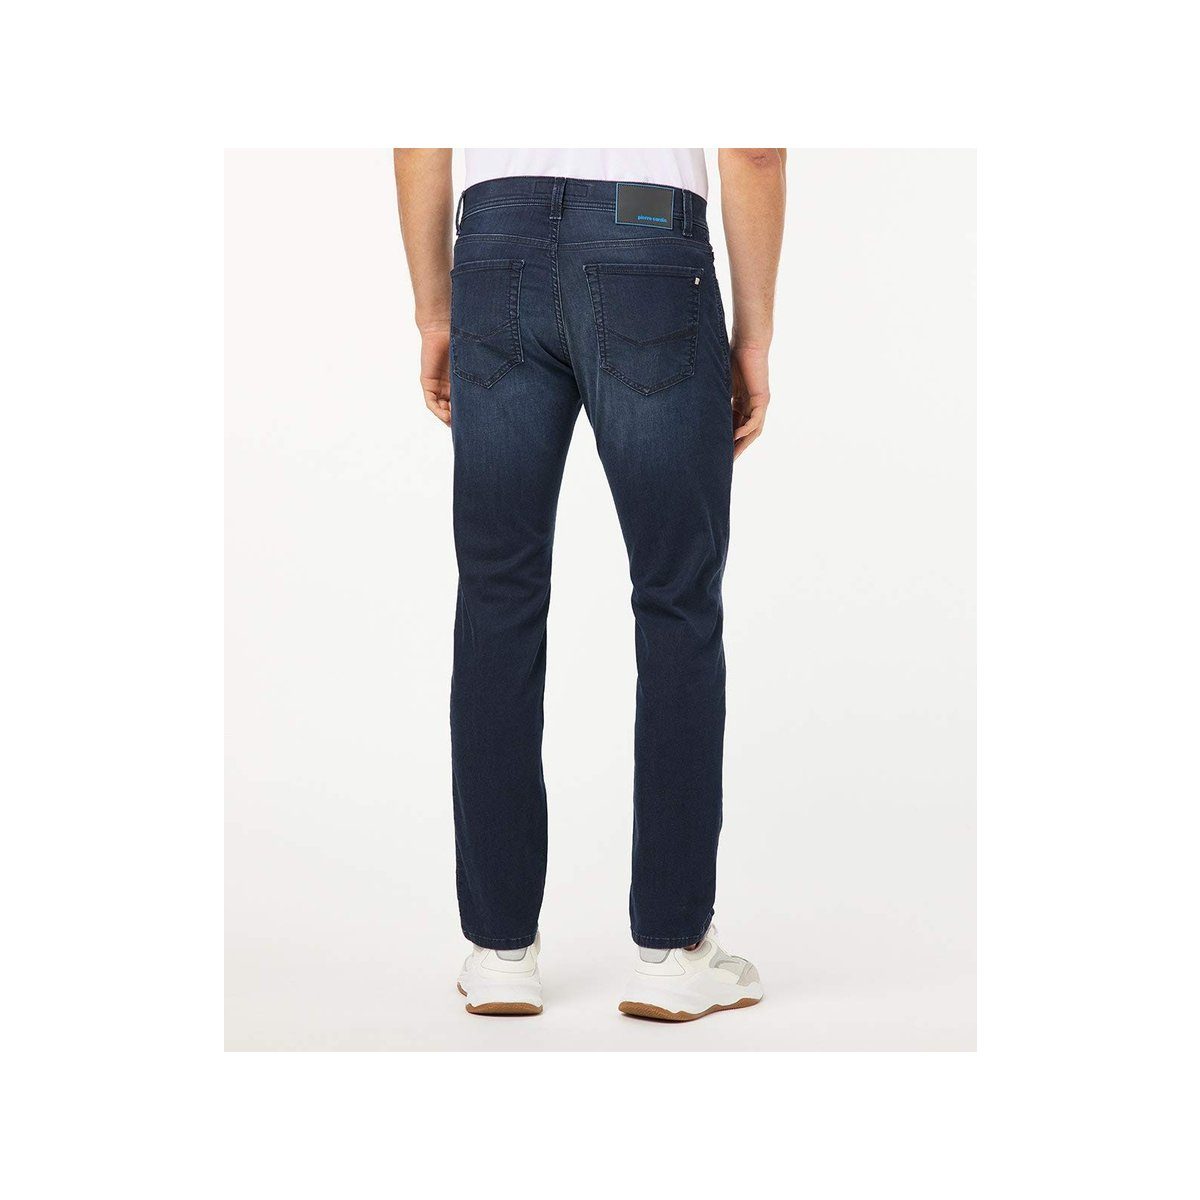 (1-tlg) Pierre 5-Pocket-Jeans uni Cardin